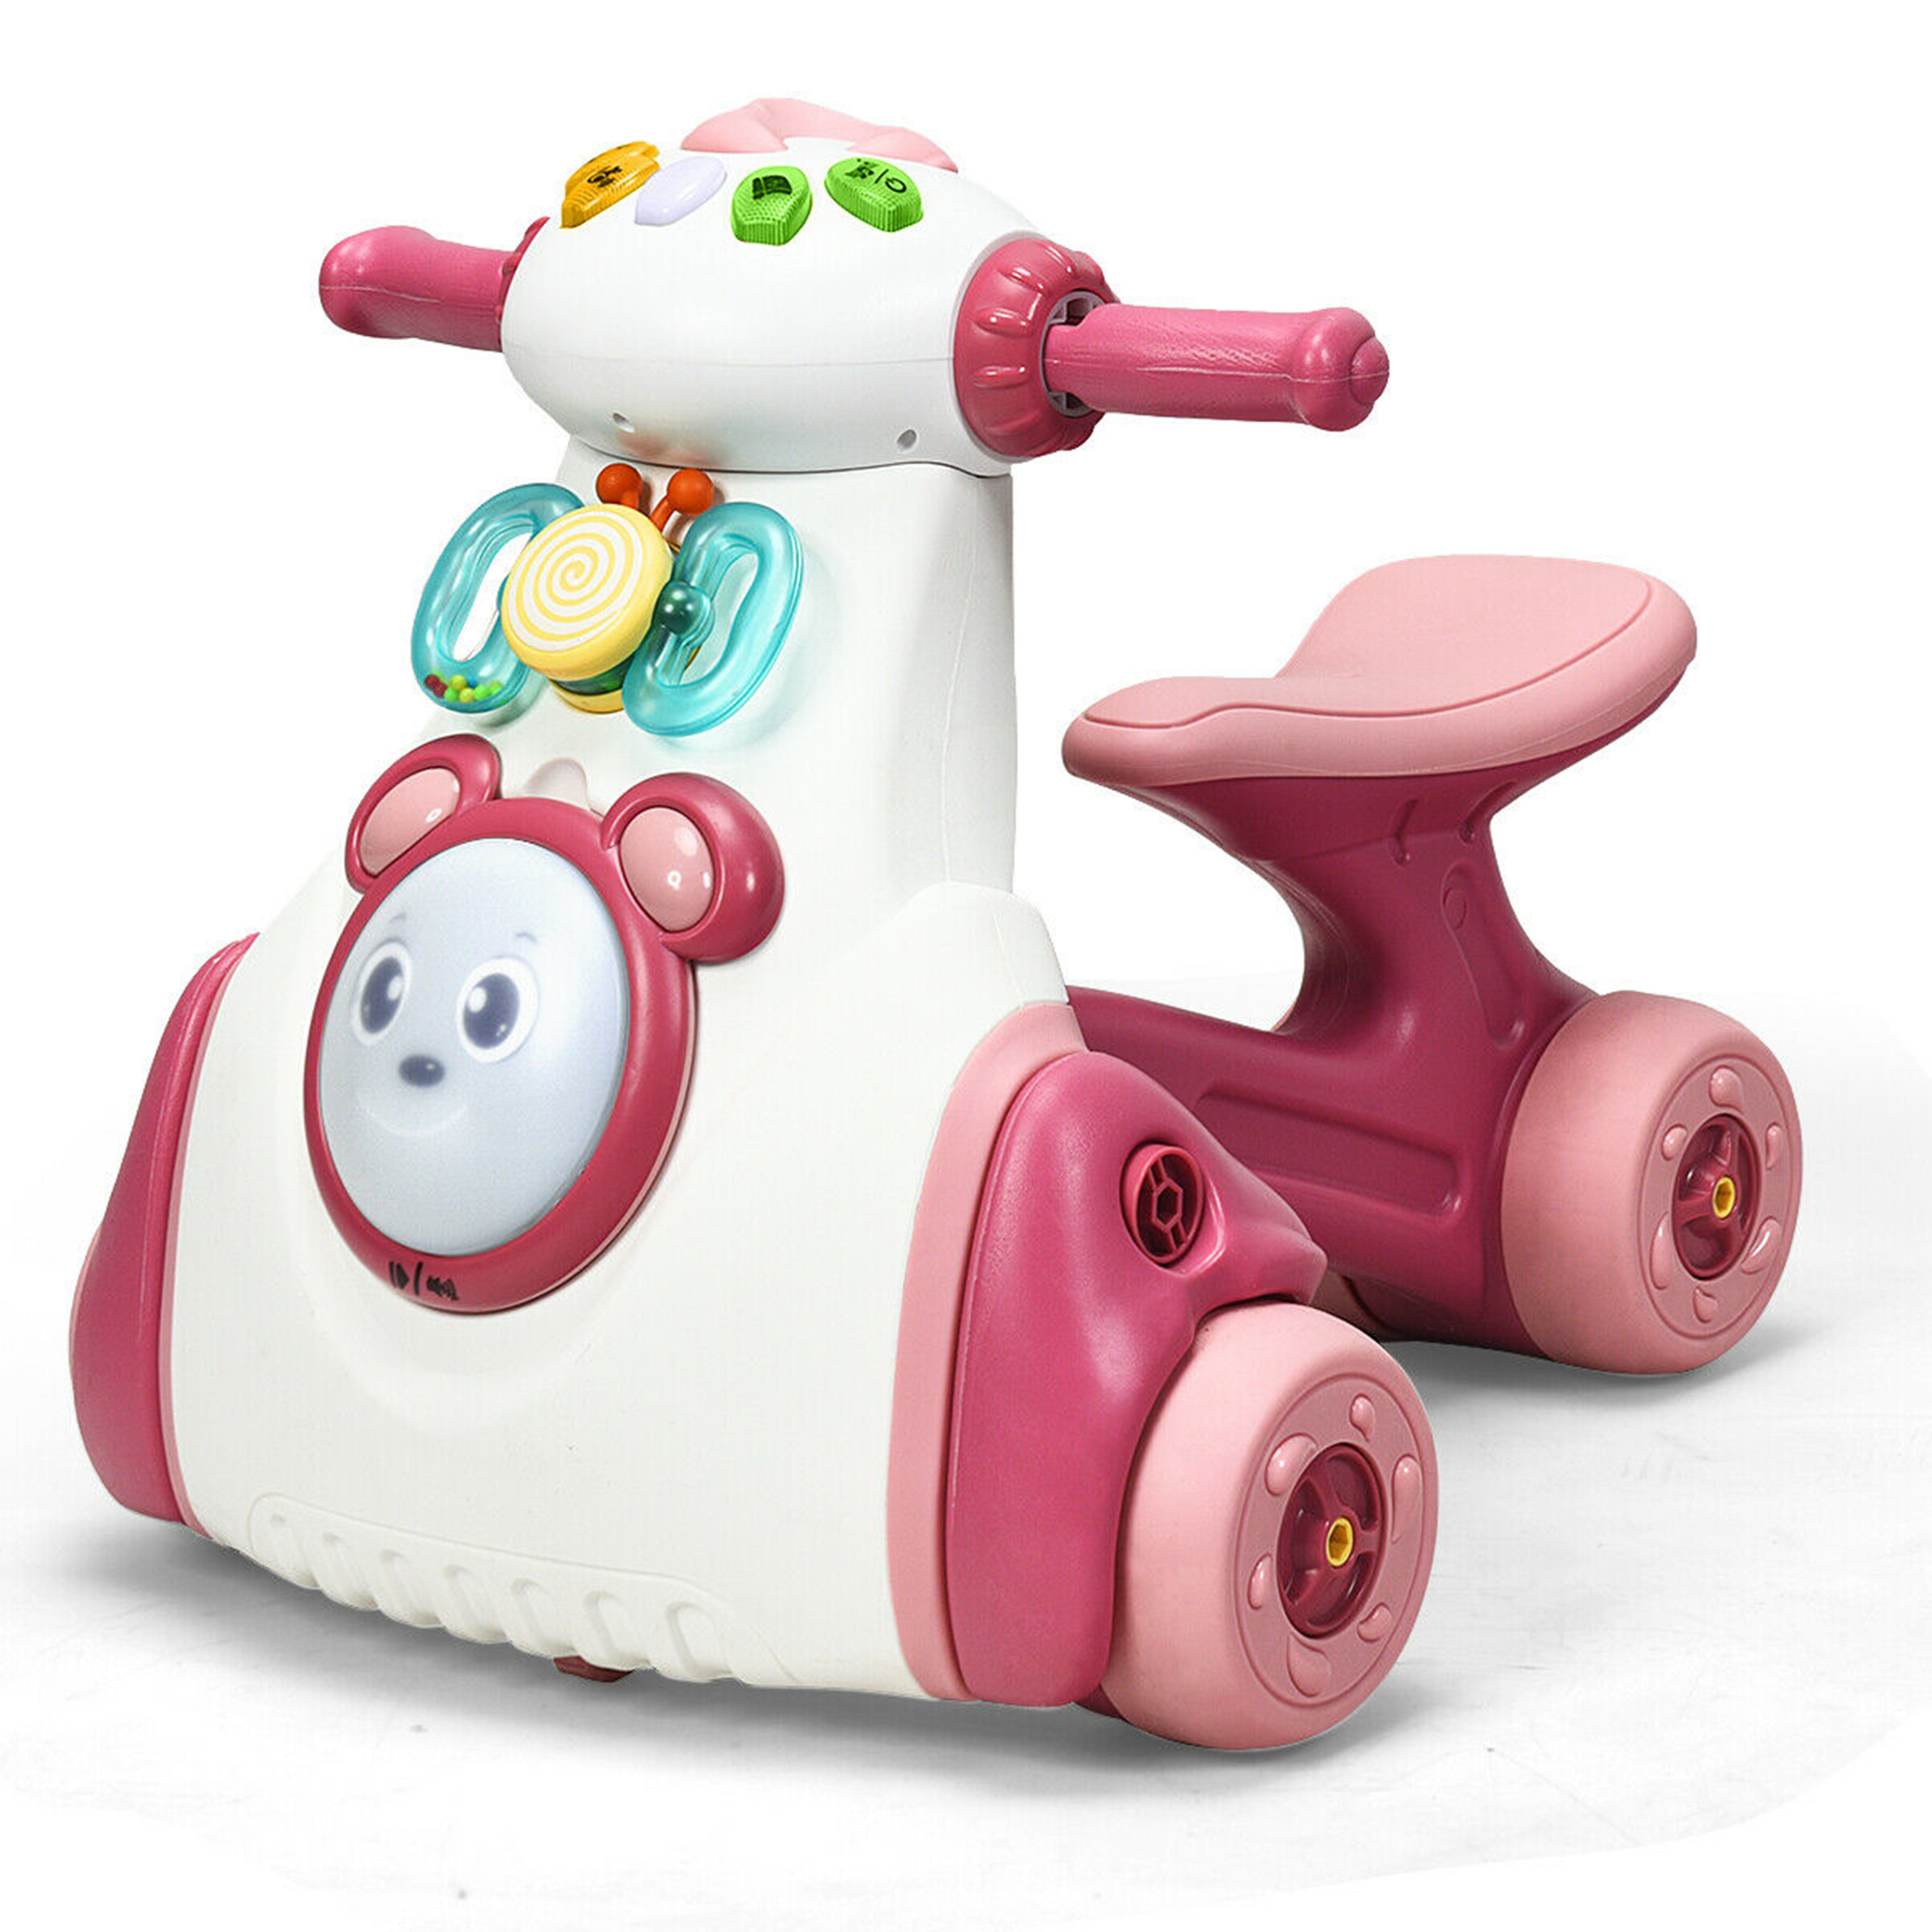 Gymax Baby Balance Bike Musical Ride Toy w/ Sensing Function & Light Toddler Walker - image 1 of 10